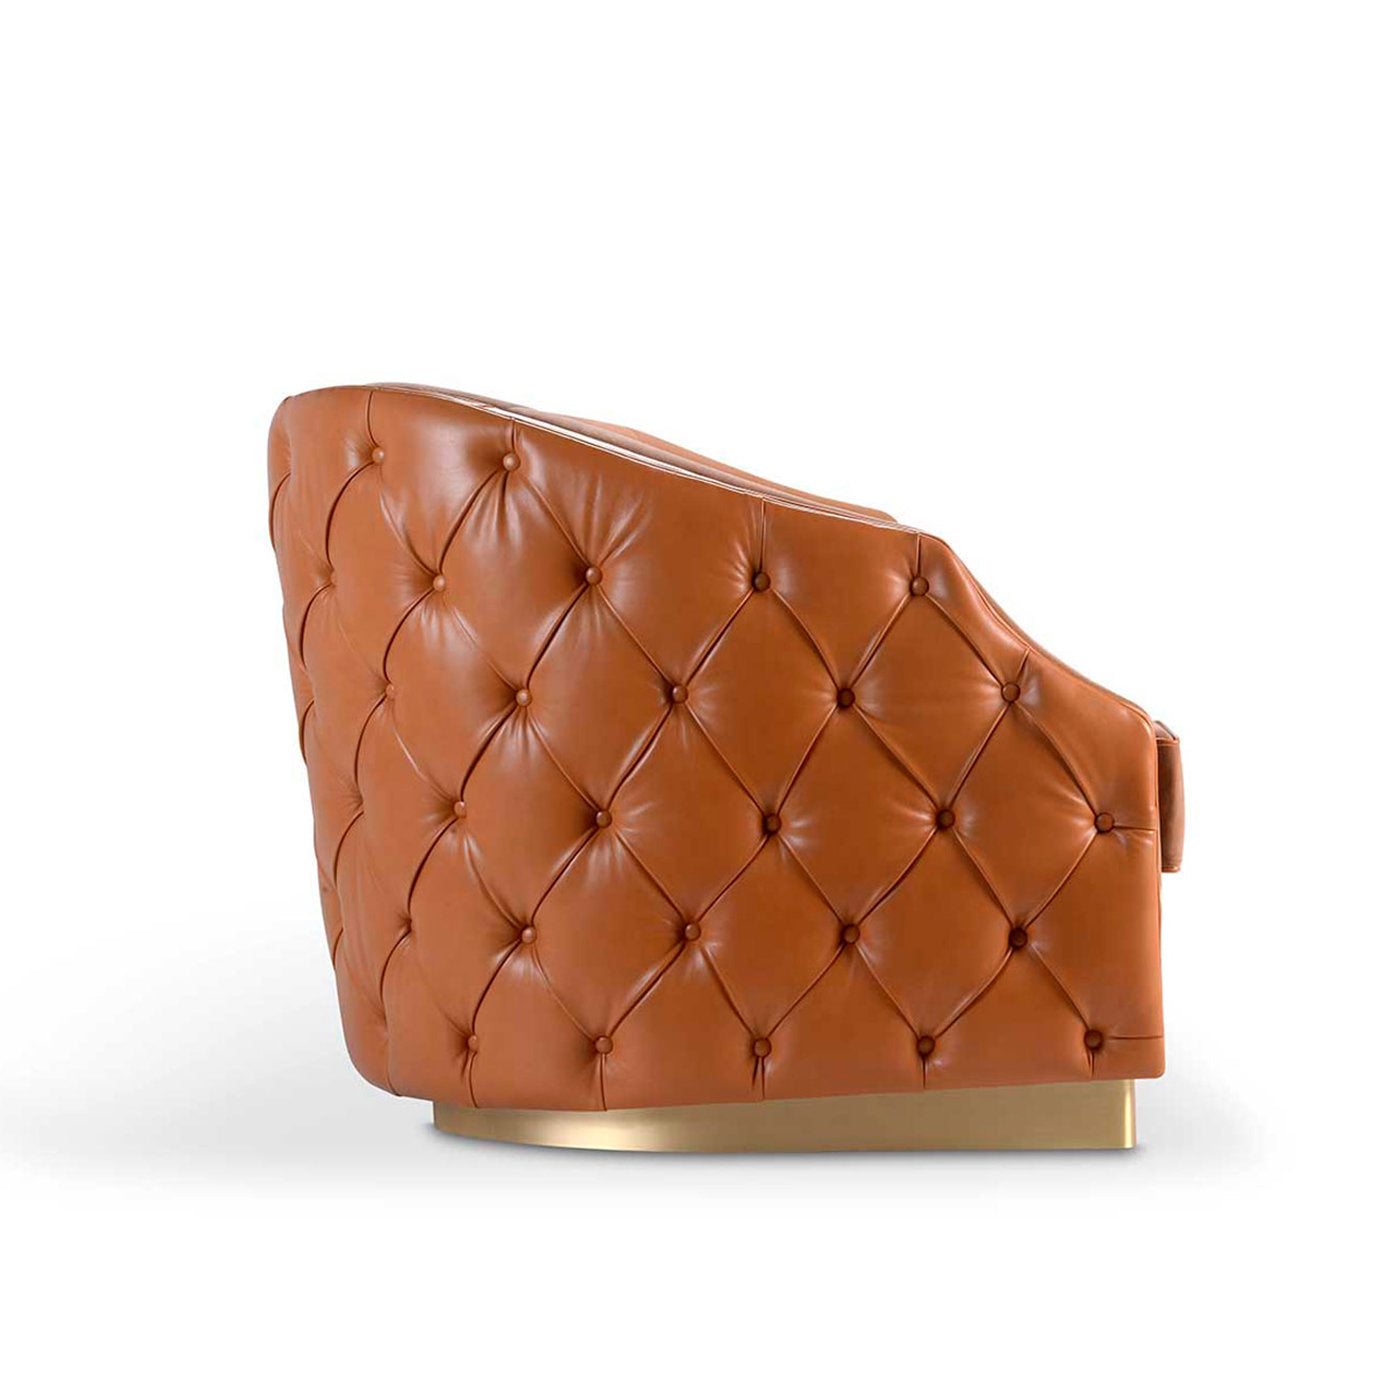 Cleio 3-Seater Leather Sofa - Alternative view 4